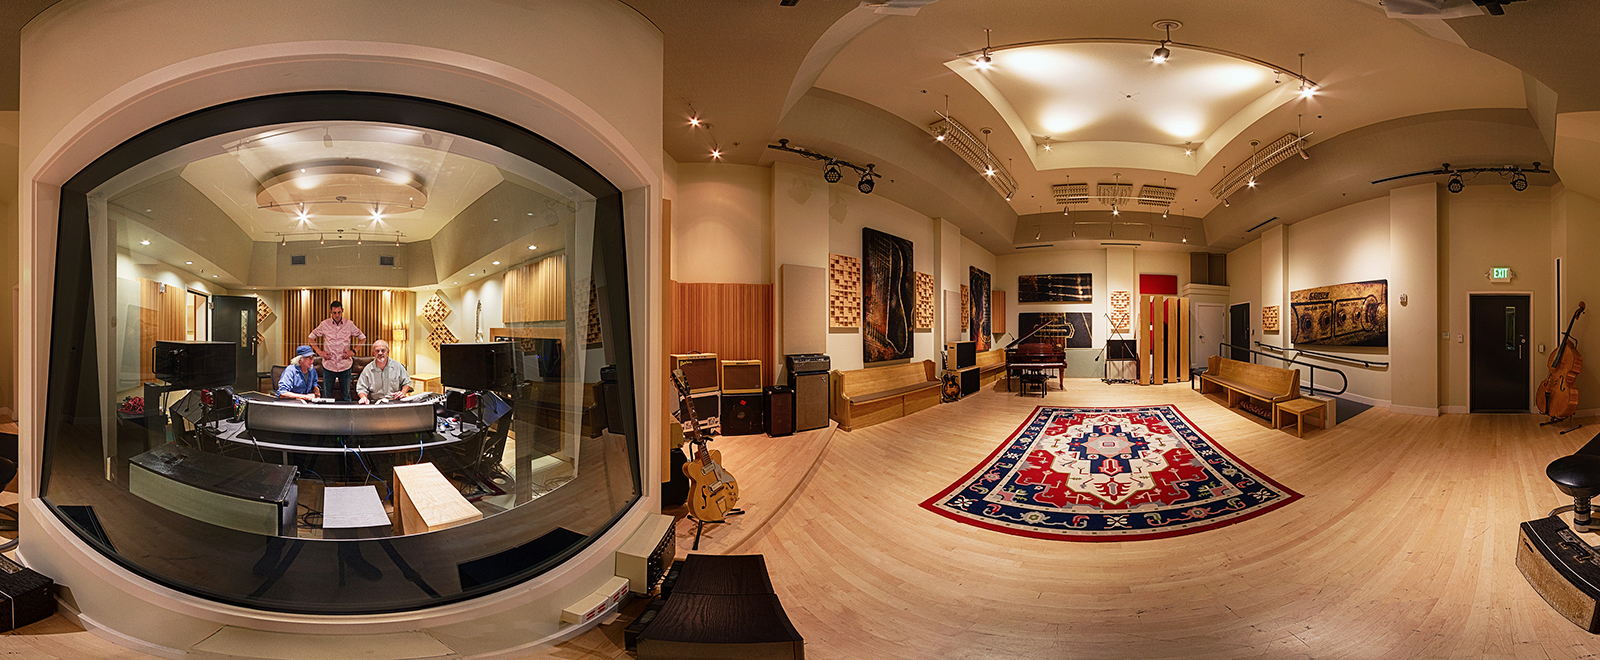 eTown - Recording Studio - 360 Virtual Tour - eTown